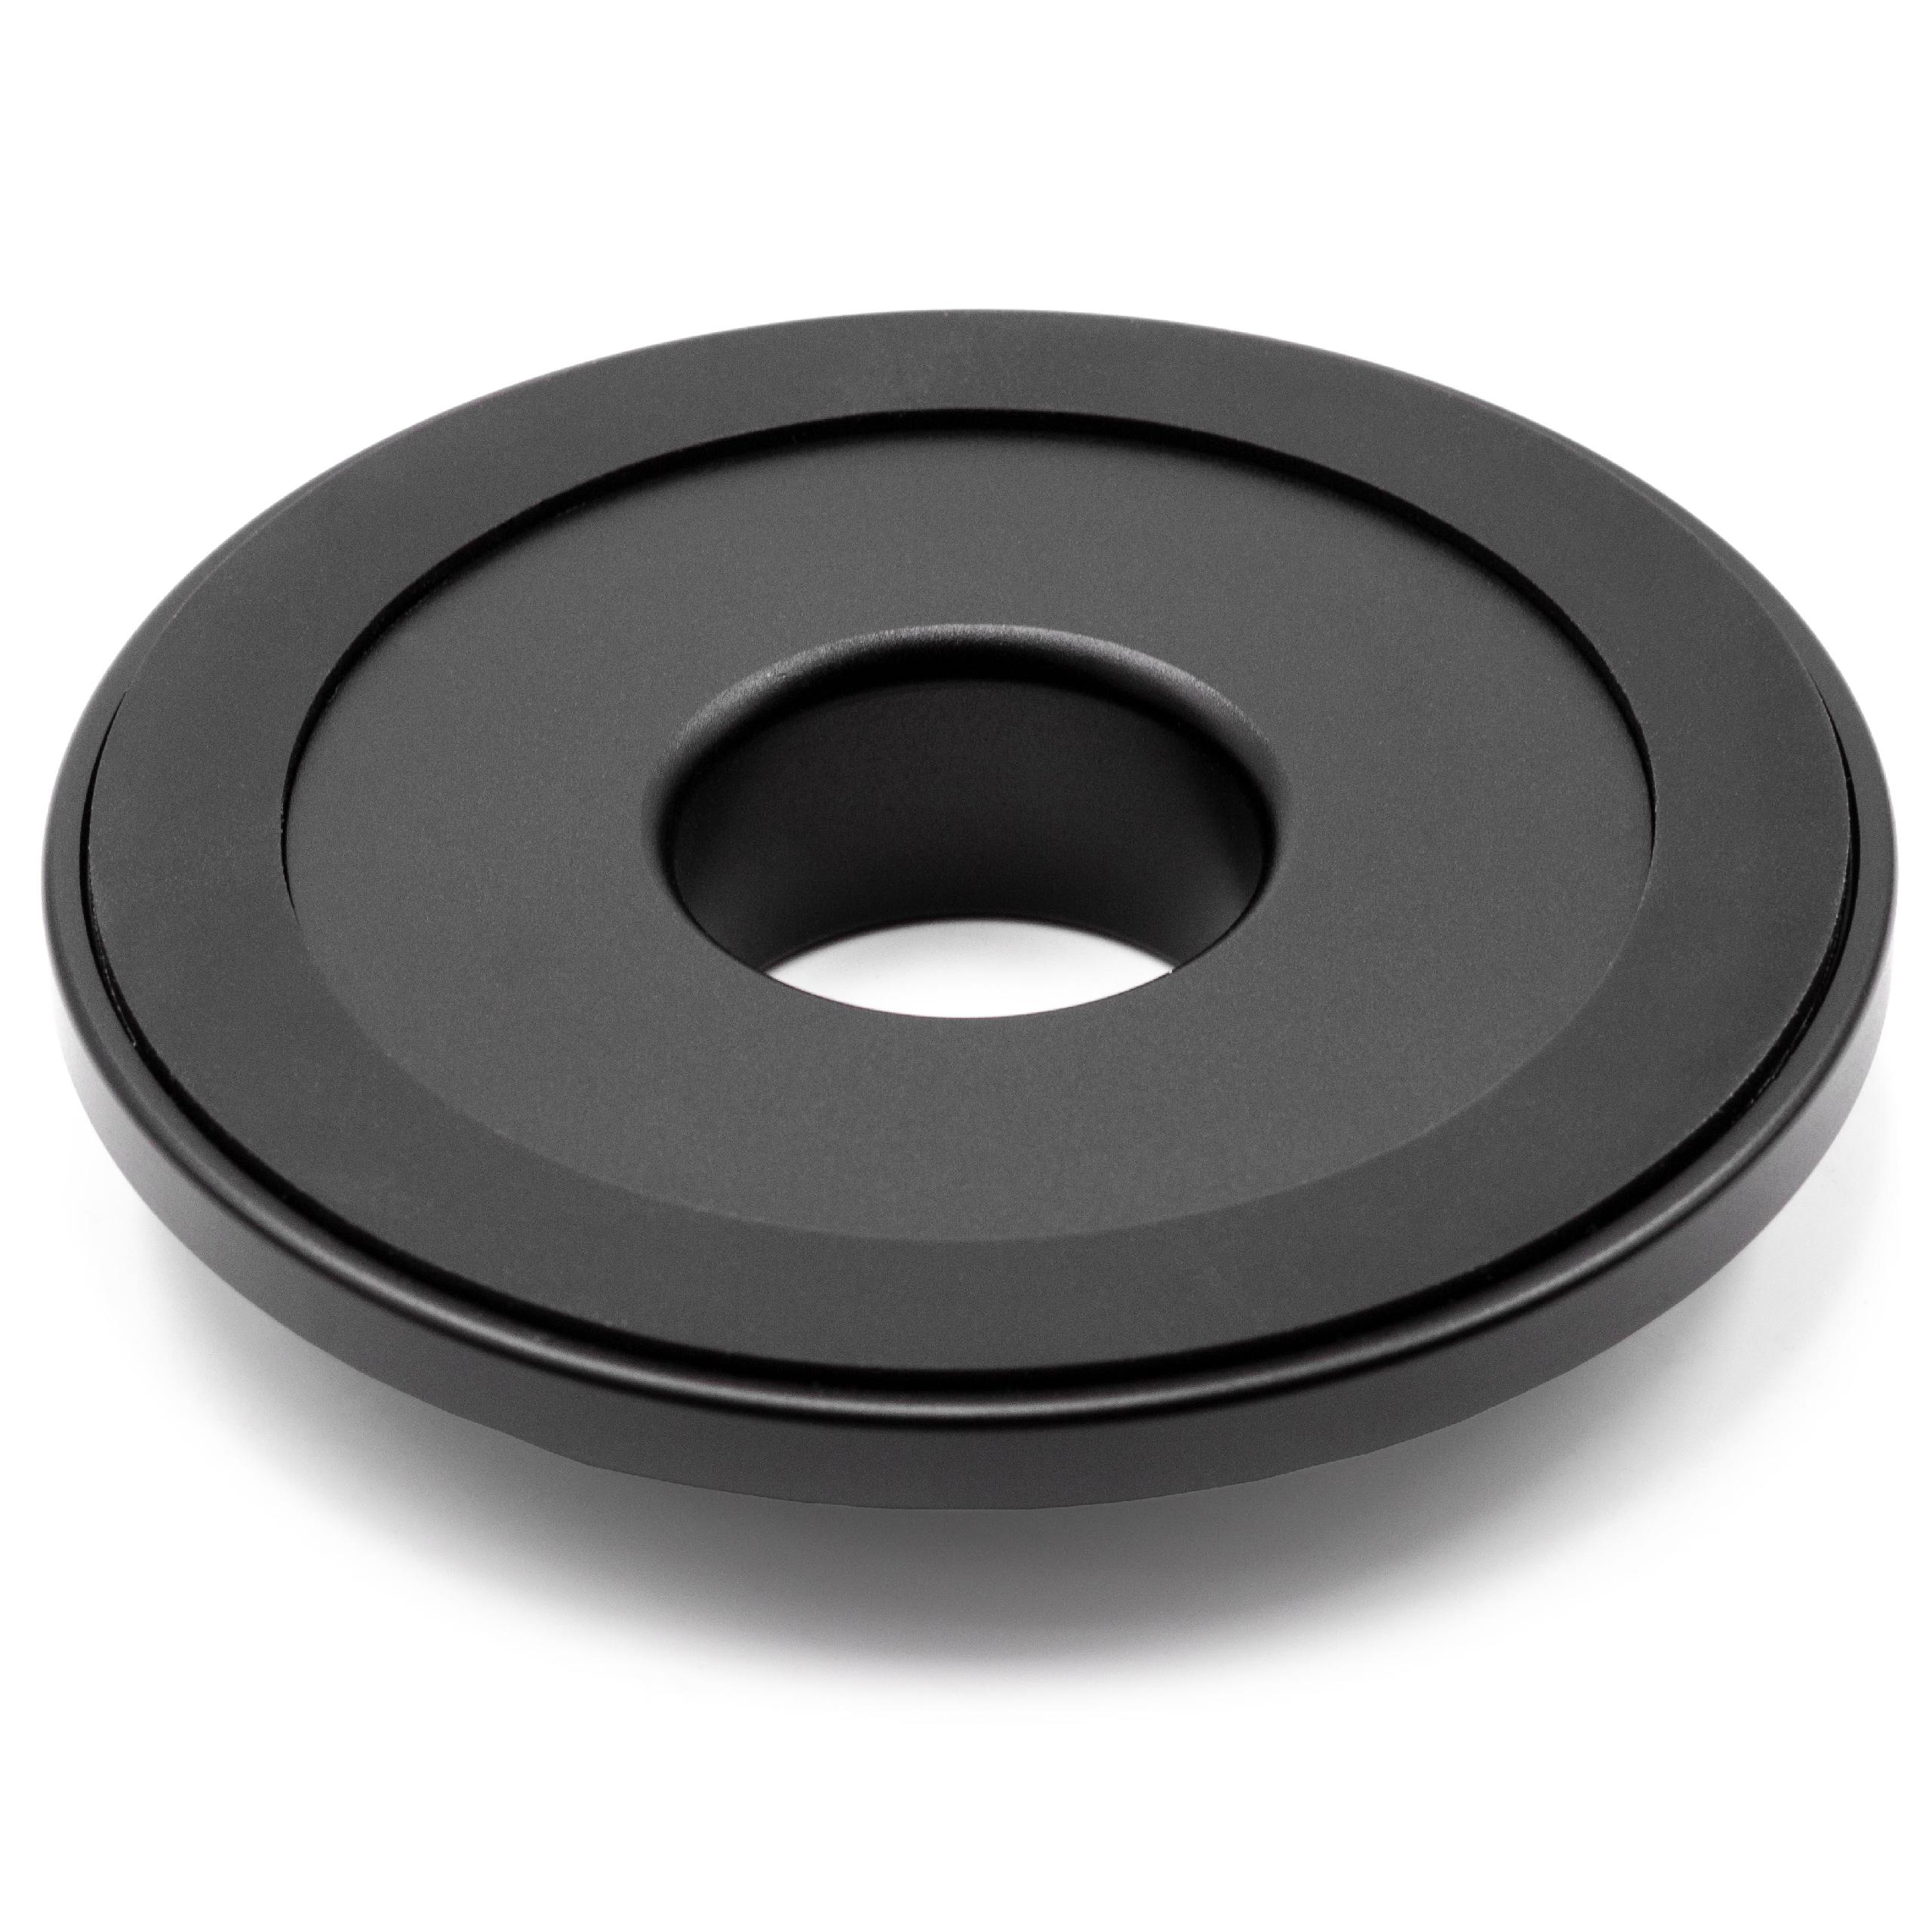 Podstawka do głośnika Apple HomePod - aluminium, czarny